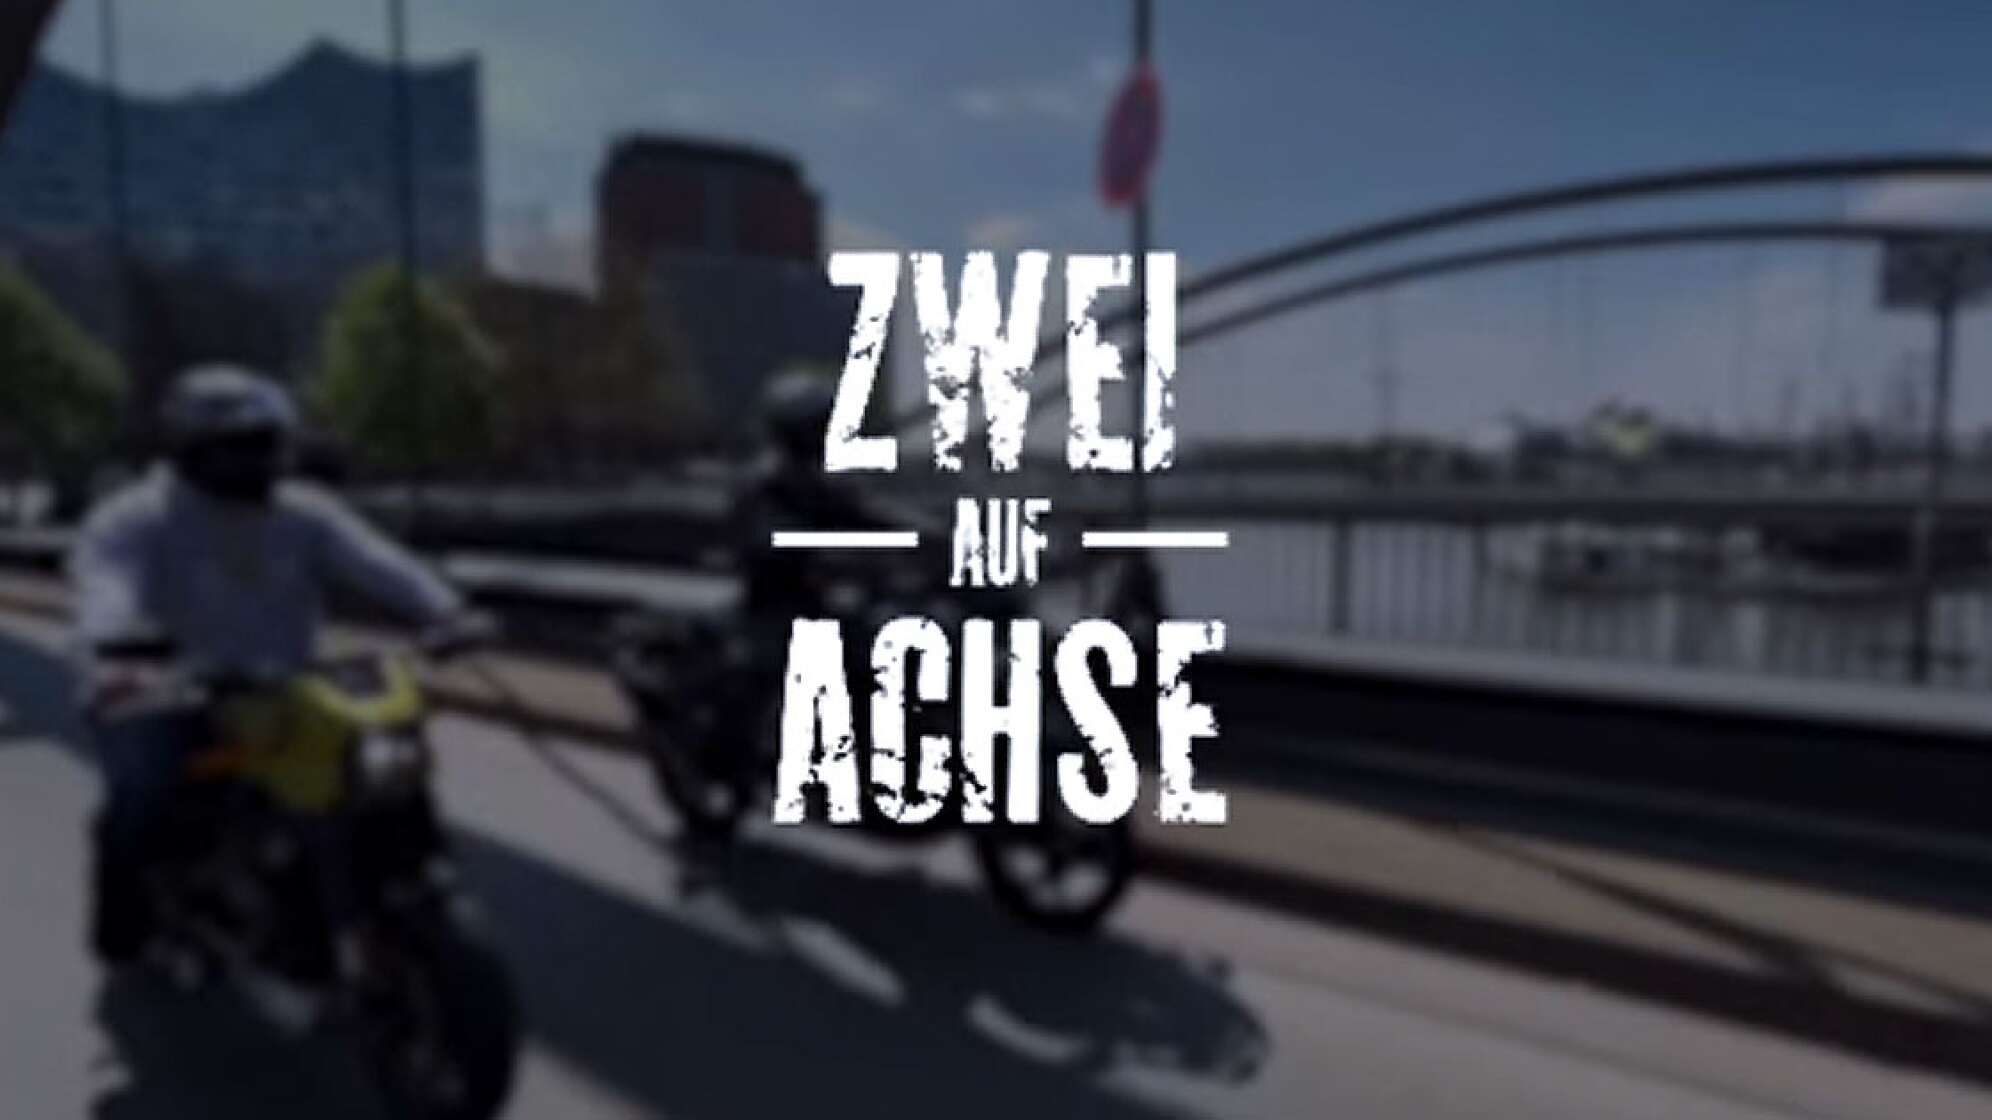 Zwei auf Achse: Der Vlog zum Motorradfahren in Hamburg - jetzt ansehen!